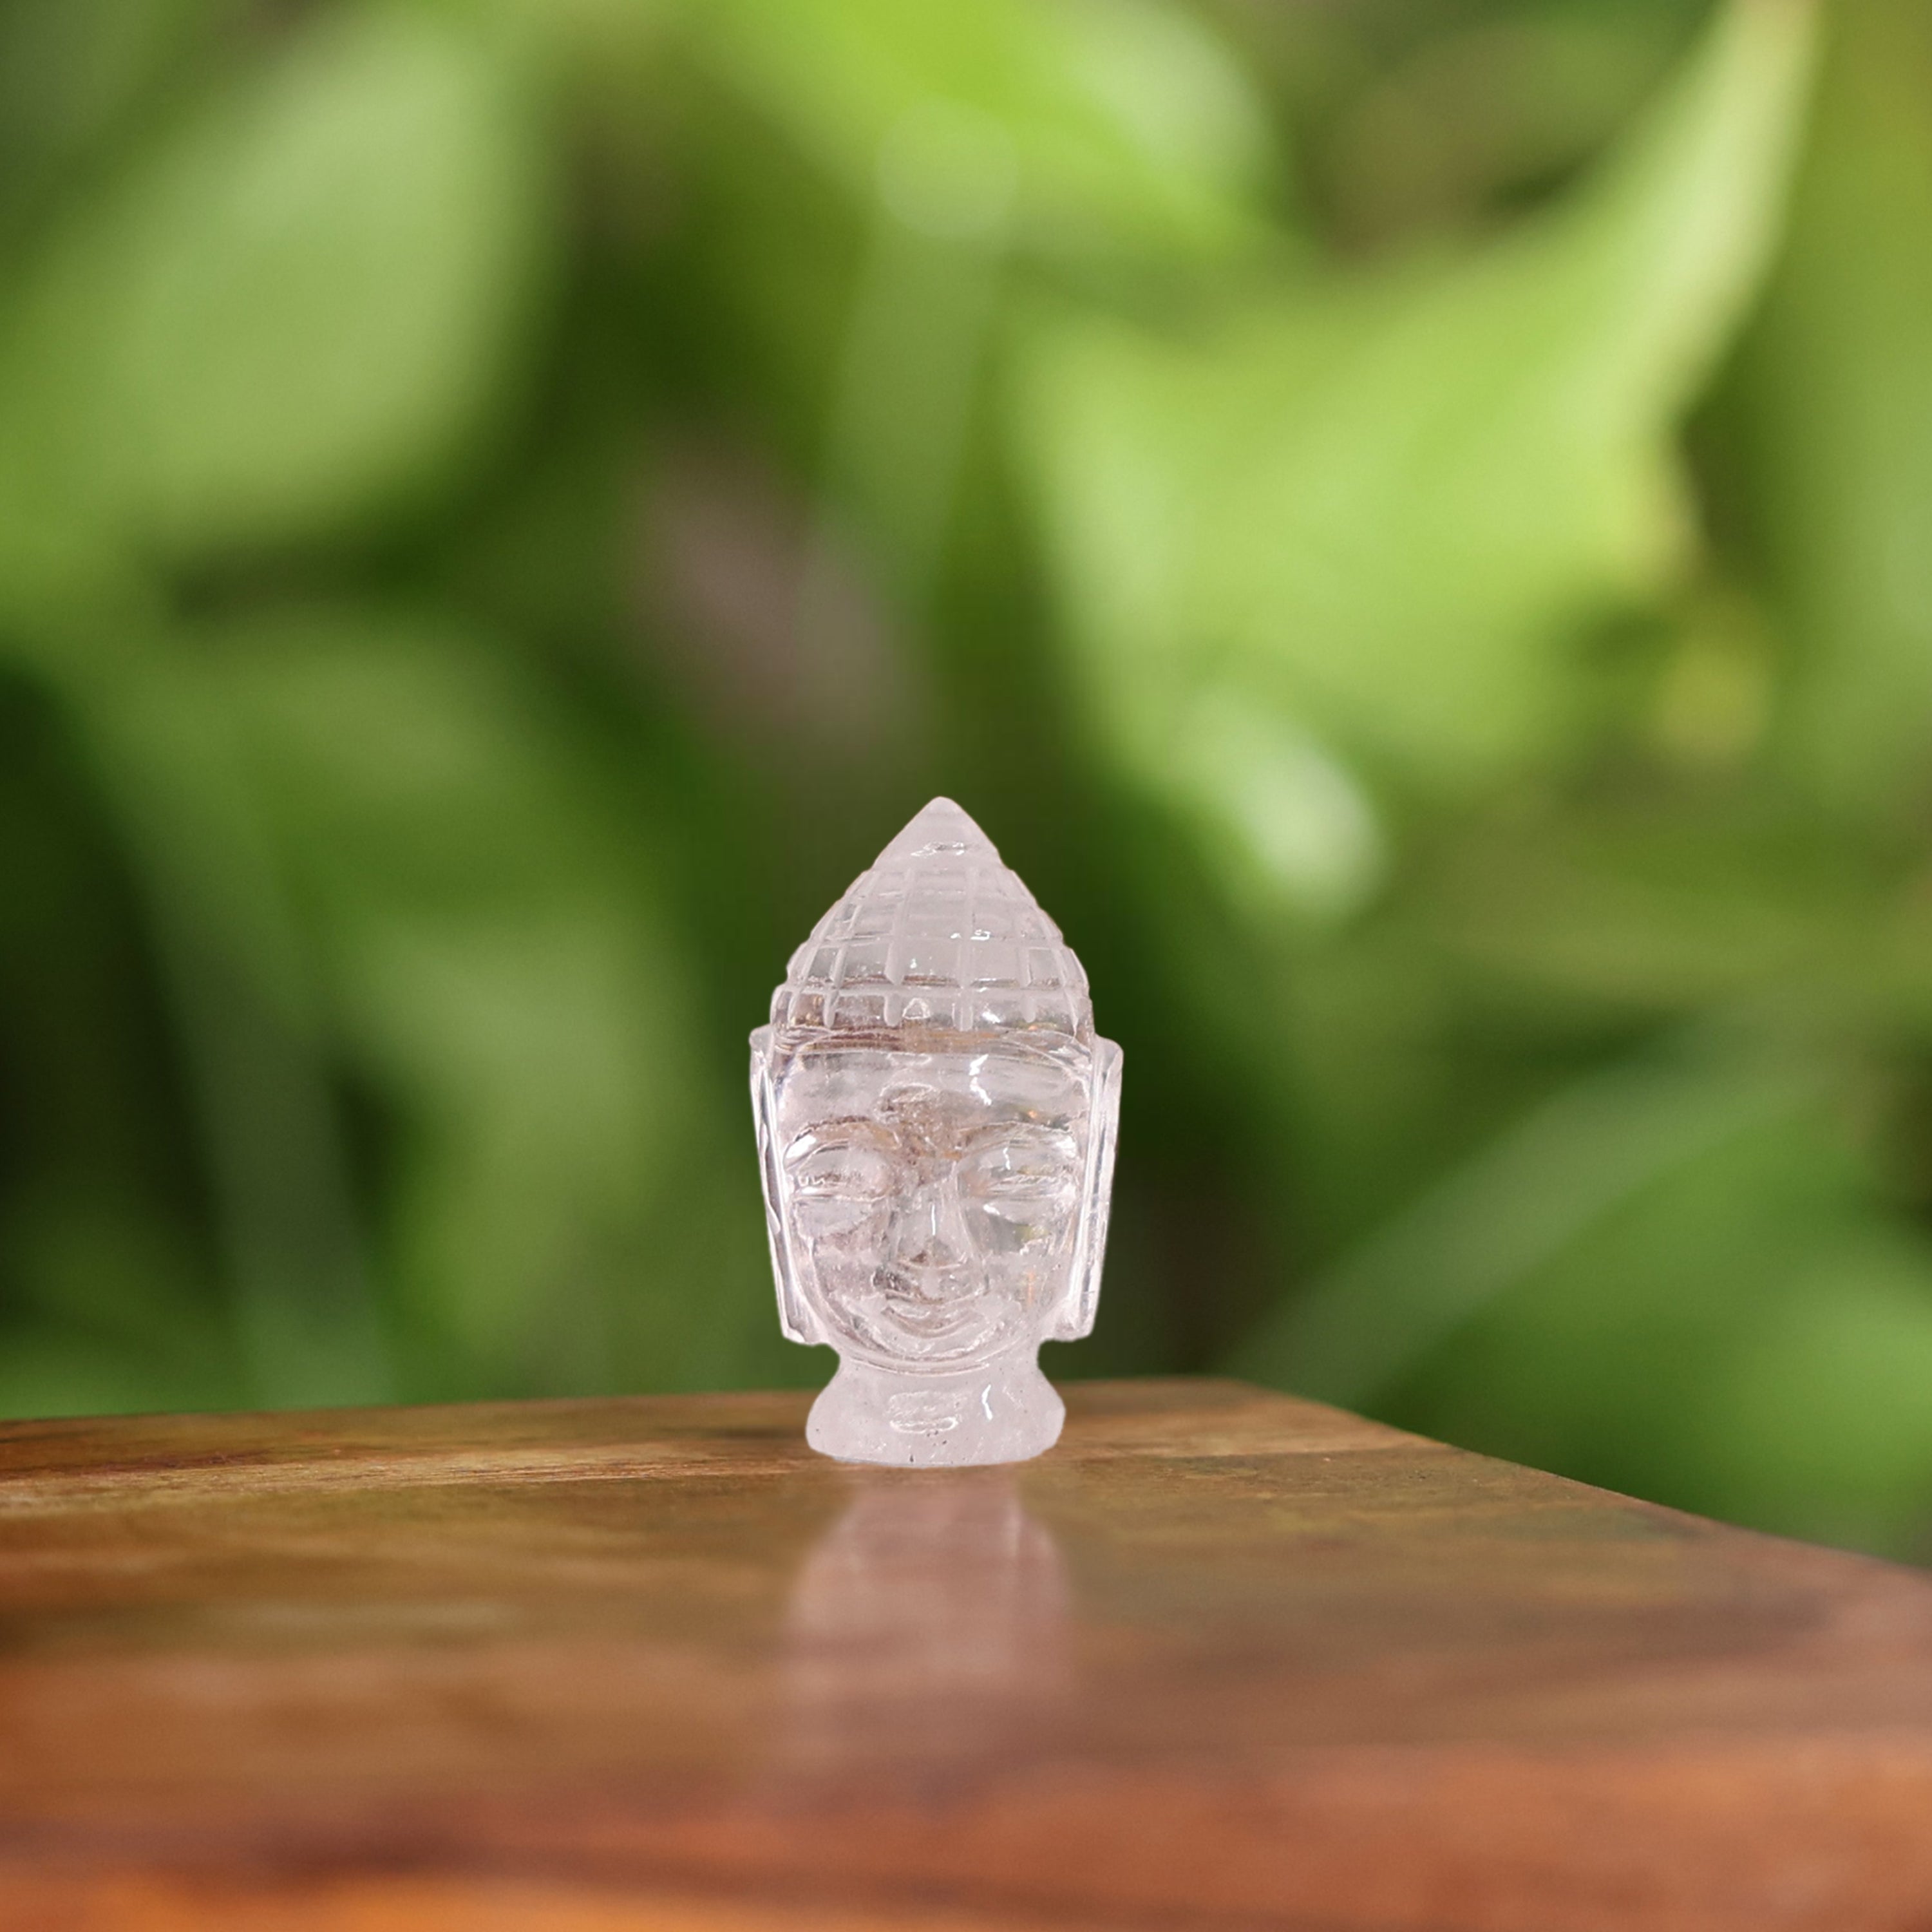 Crystal Quartz Buddha Head